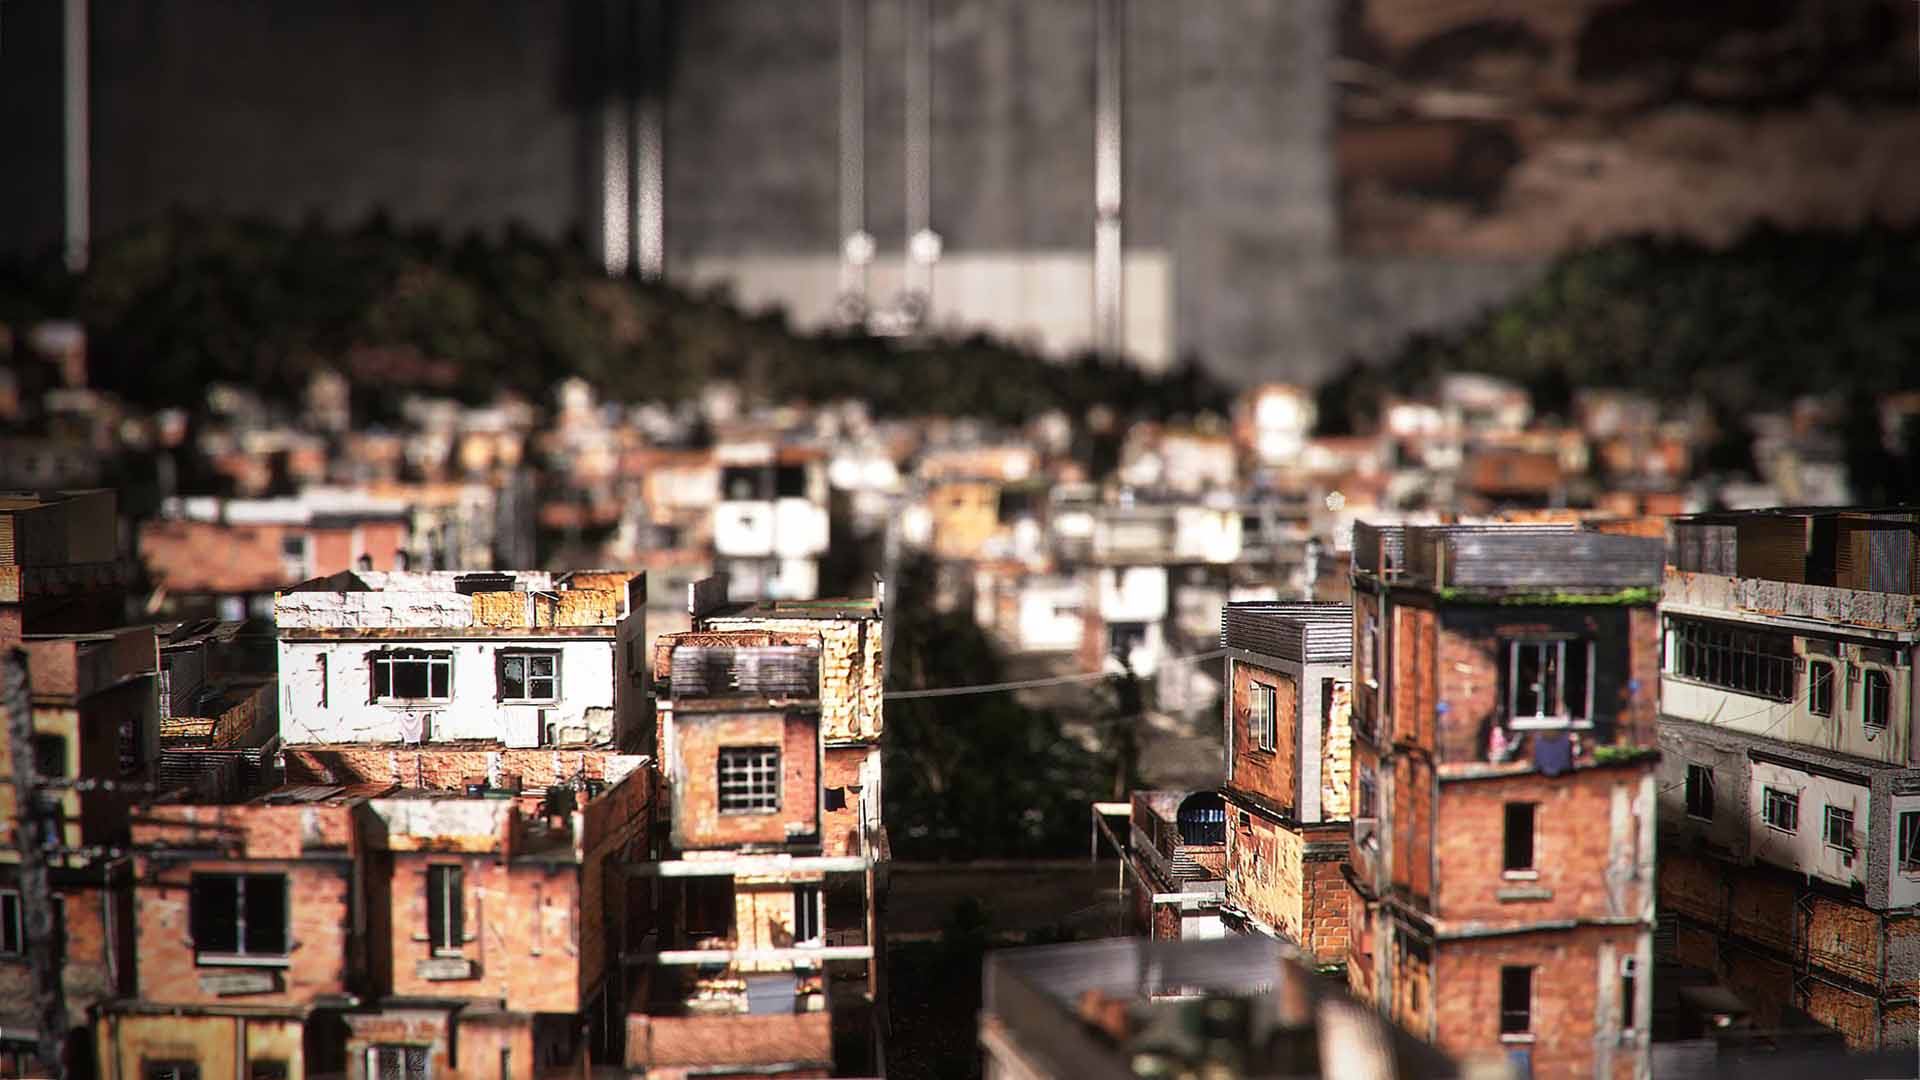 Fully procedural 3D model of a favela